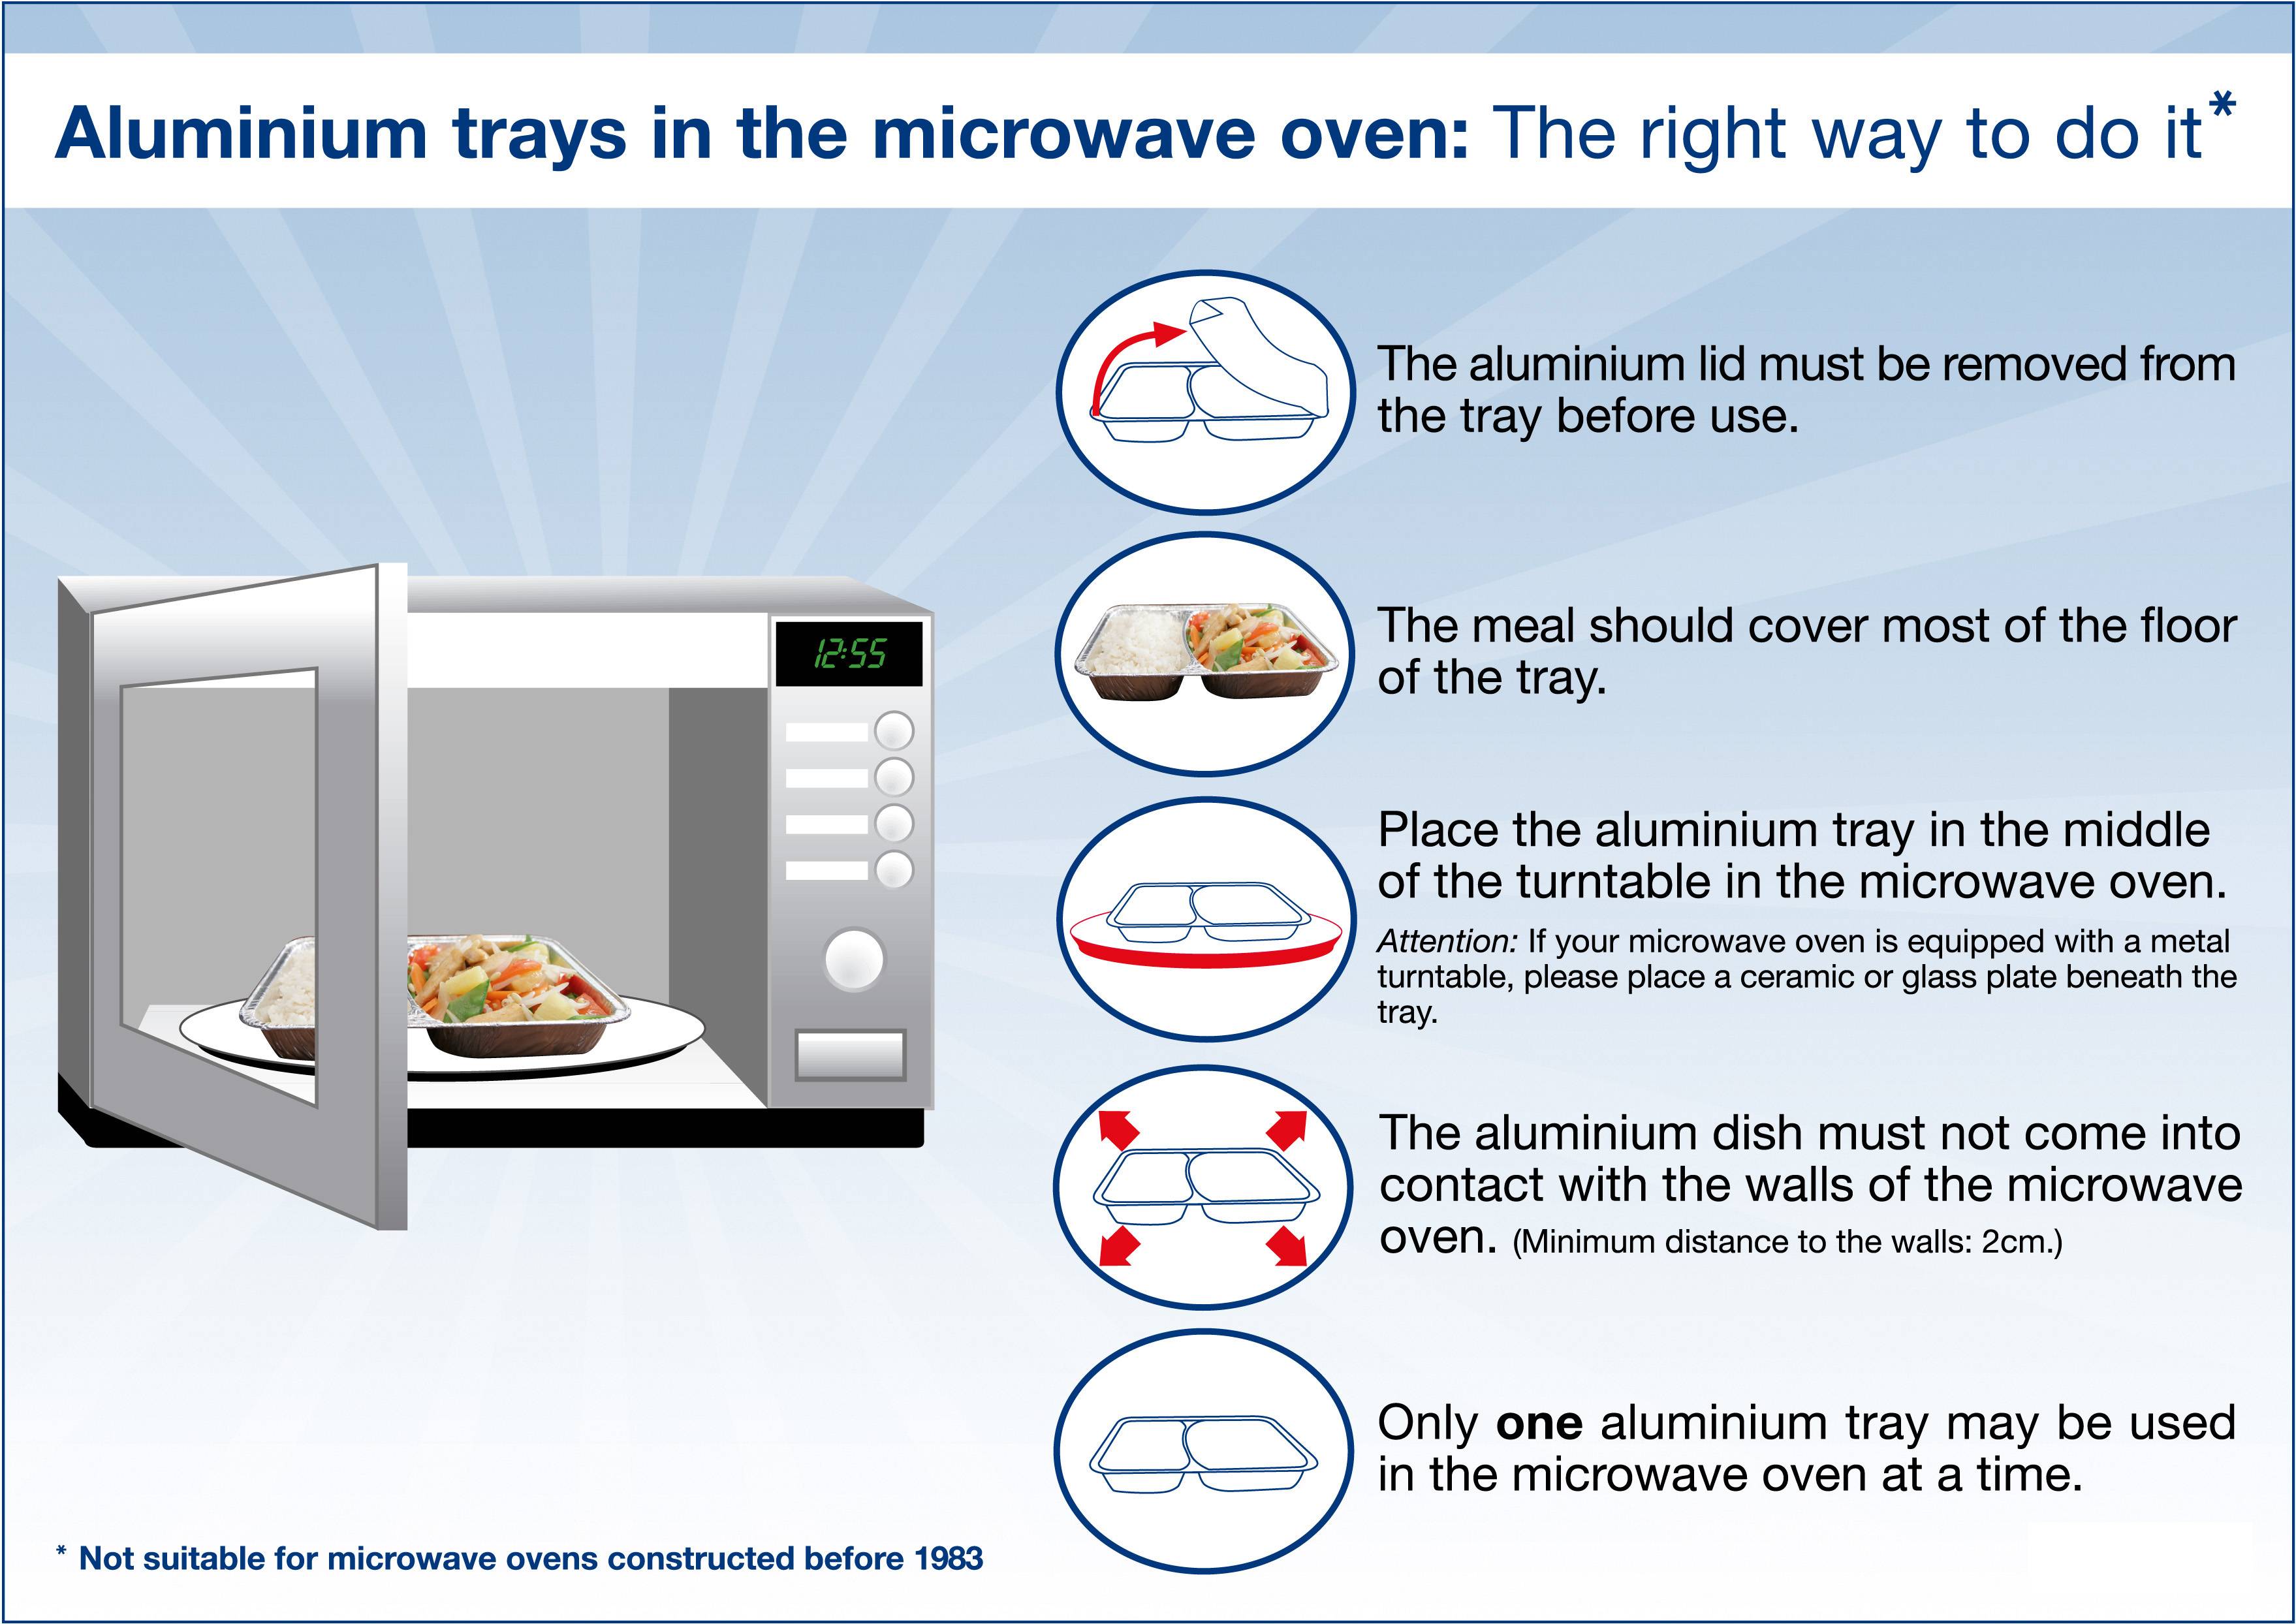 Без вреда для здоровья, сколько лет можно использовать микроволновую печь